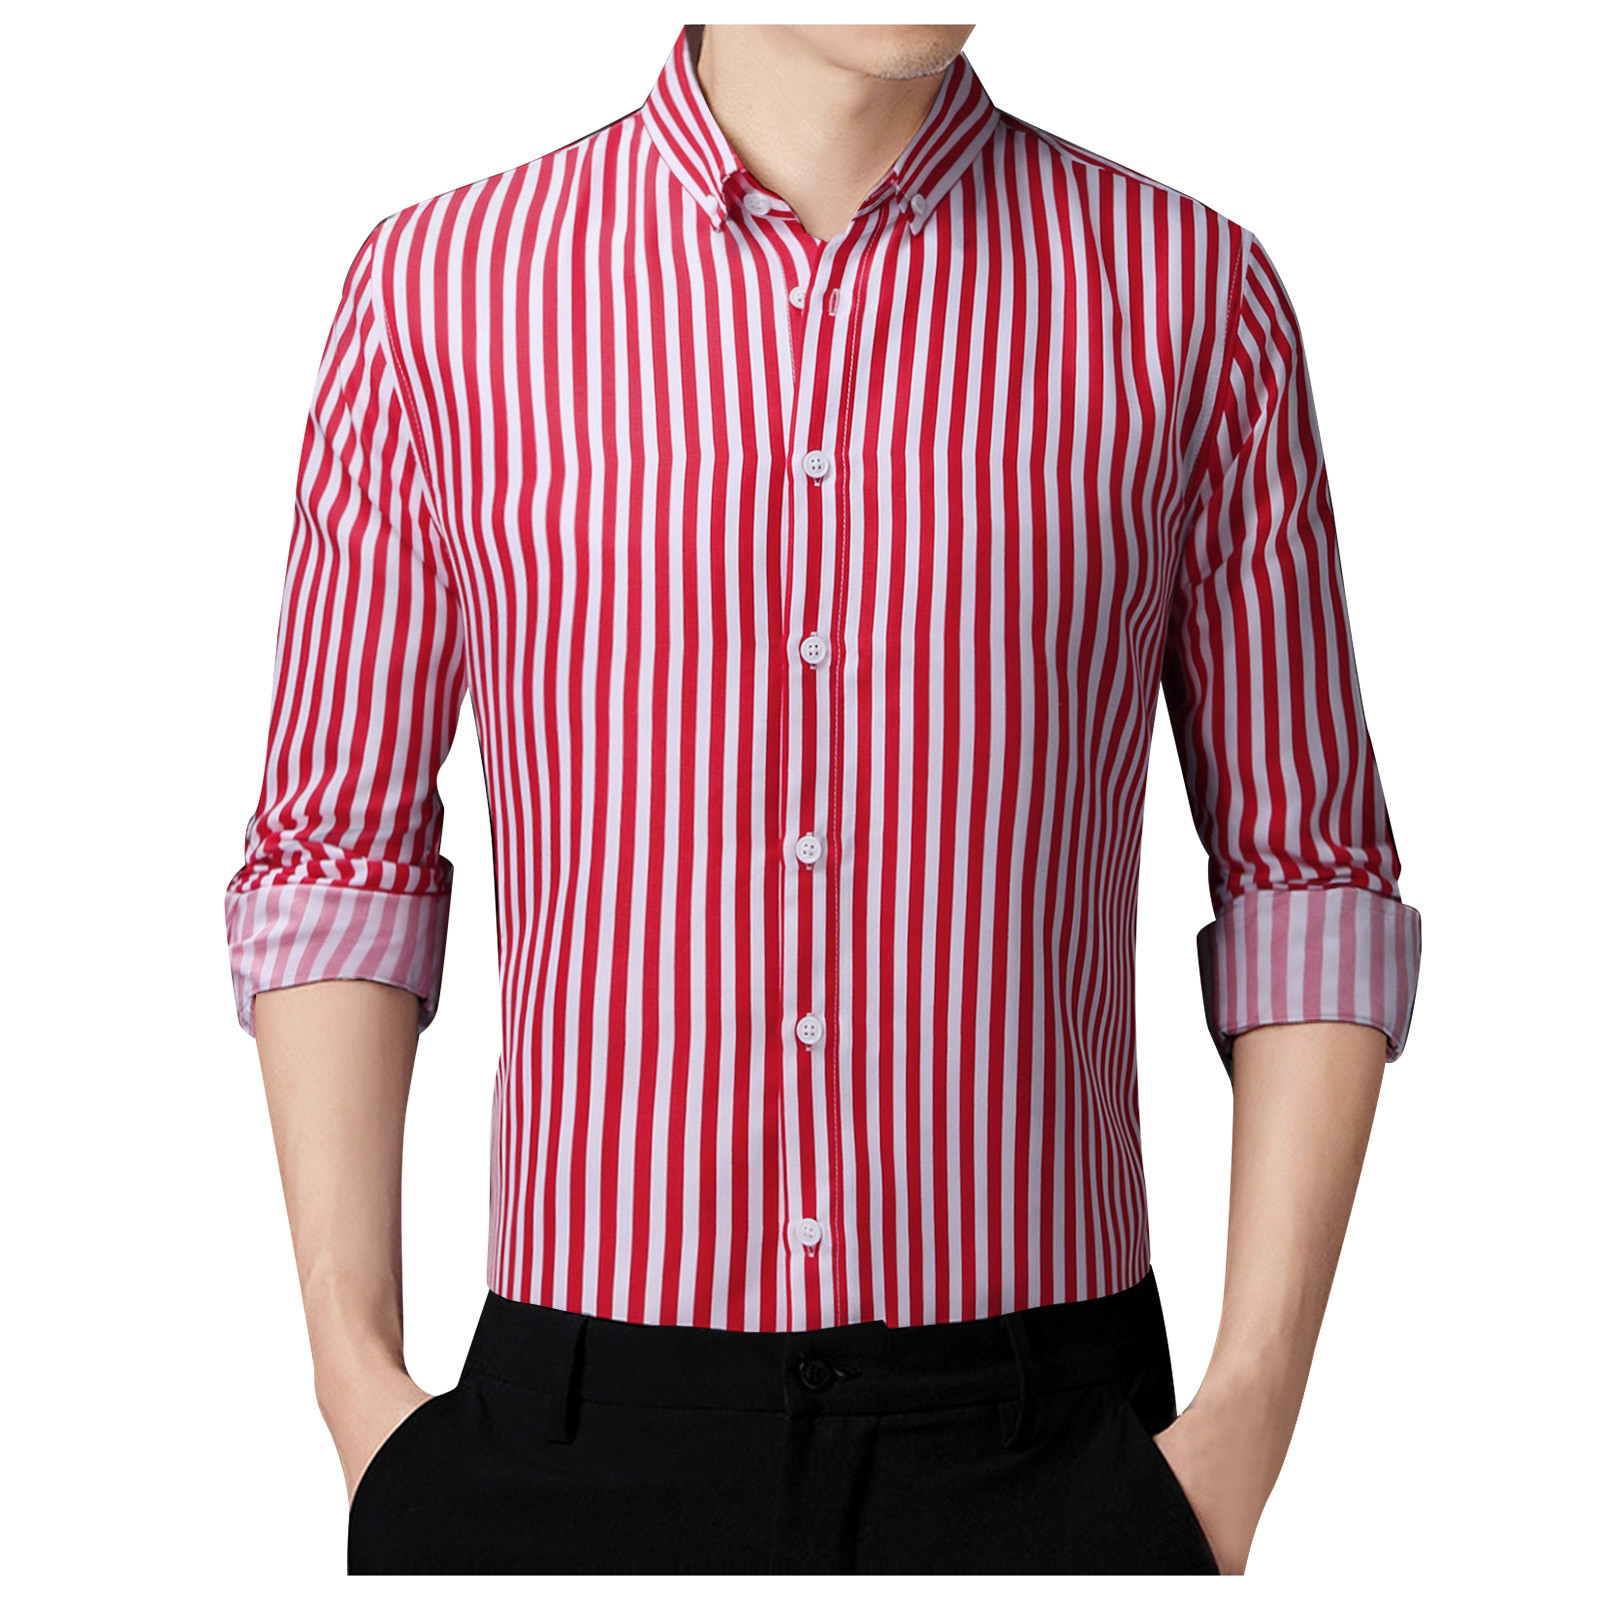 adviicd Men's Shirt, Long Sleeve Casual Button Up Shirt, Soft Outdoor ...